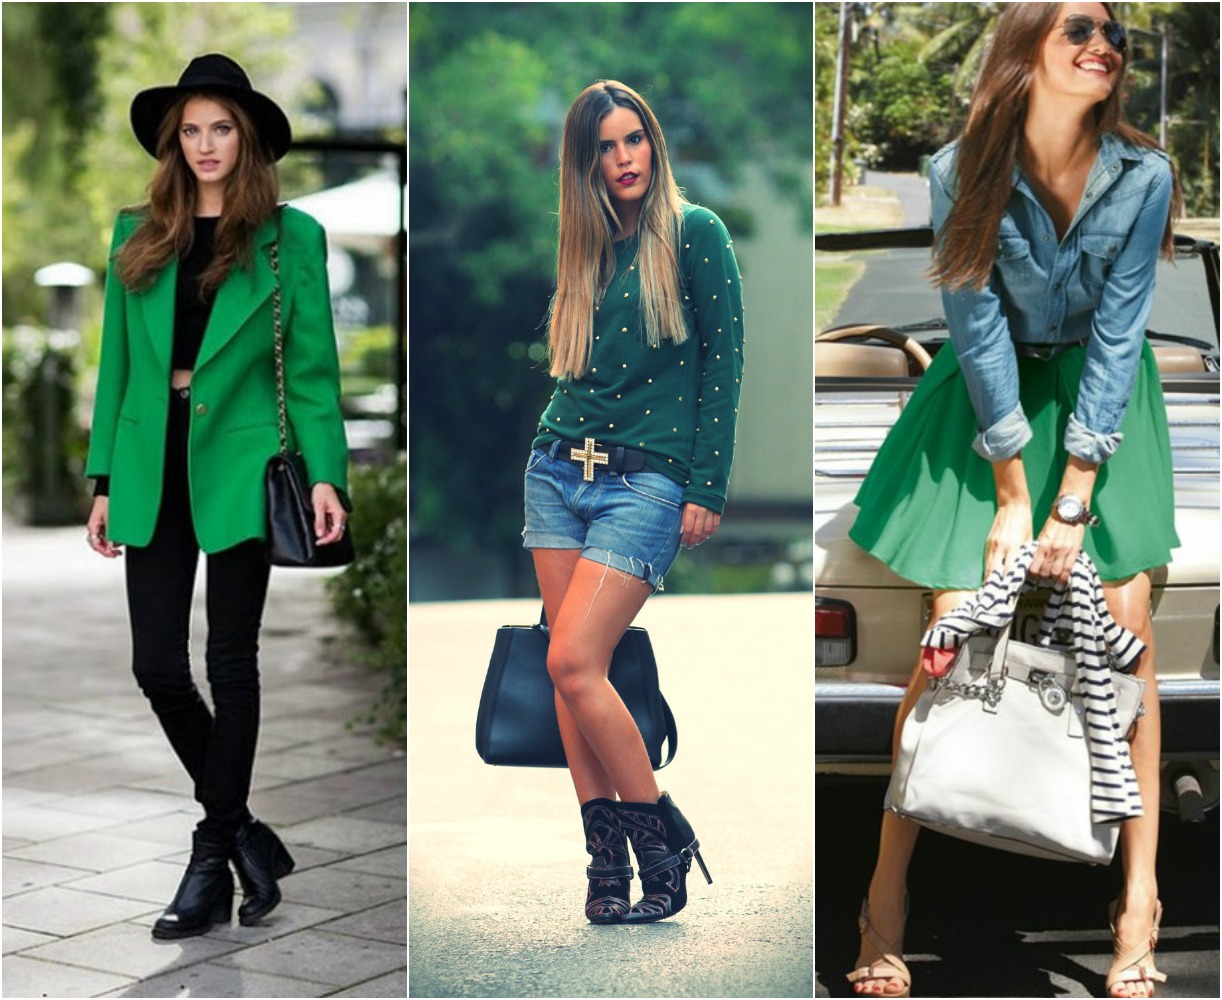 blog de moda | como usar | verde para o inverno | verde esmeralda | inverno 2013 | tendencias inverno 2013 | Moda | roupas | roupa | sobre moda | vestido | moda roupa | roupa da moda |  blusas | vestidos de festa | vestido para festa | roupas da moda | sa